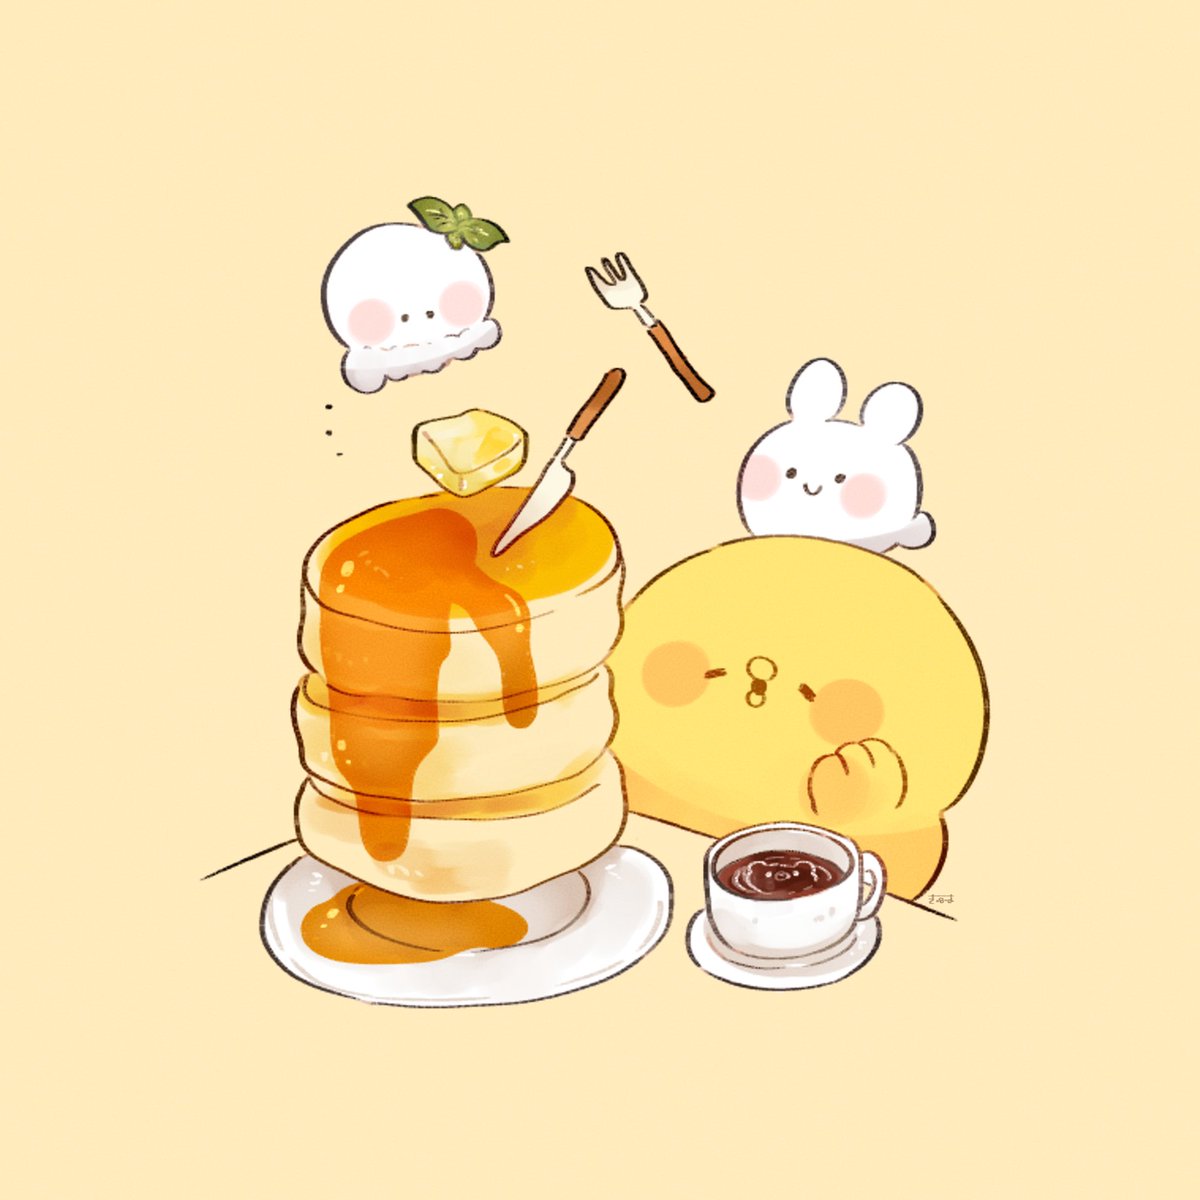 「パンケーキだぁ～!  #きみピヨ」|てんみやきよのイラスト